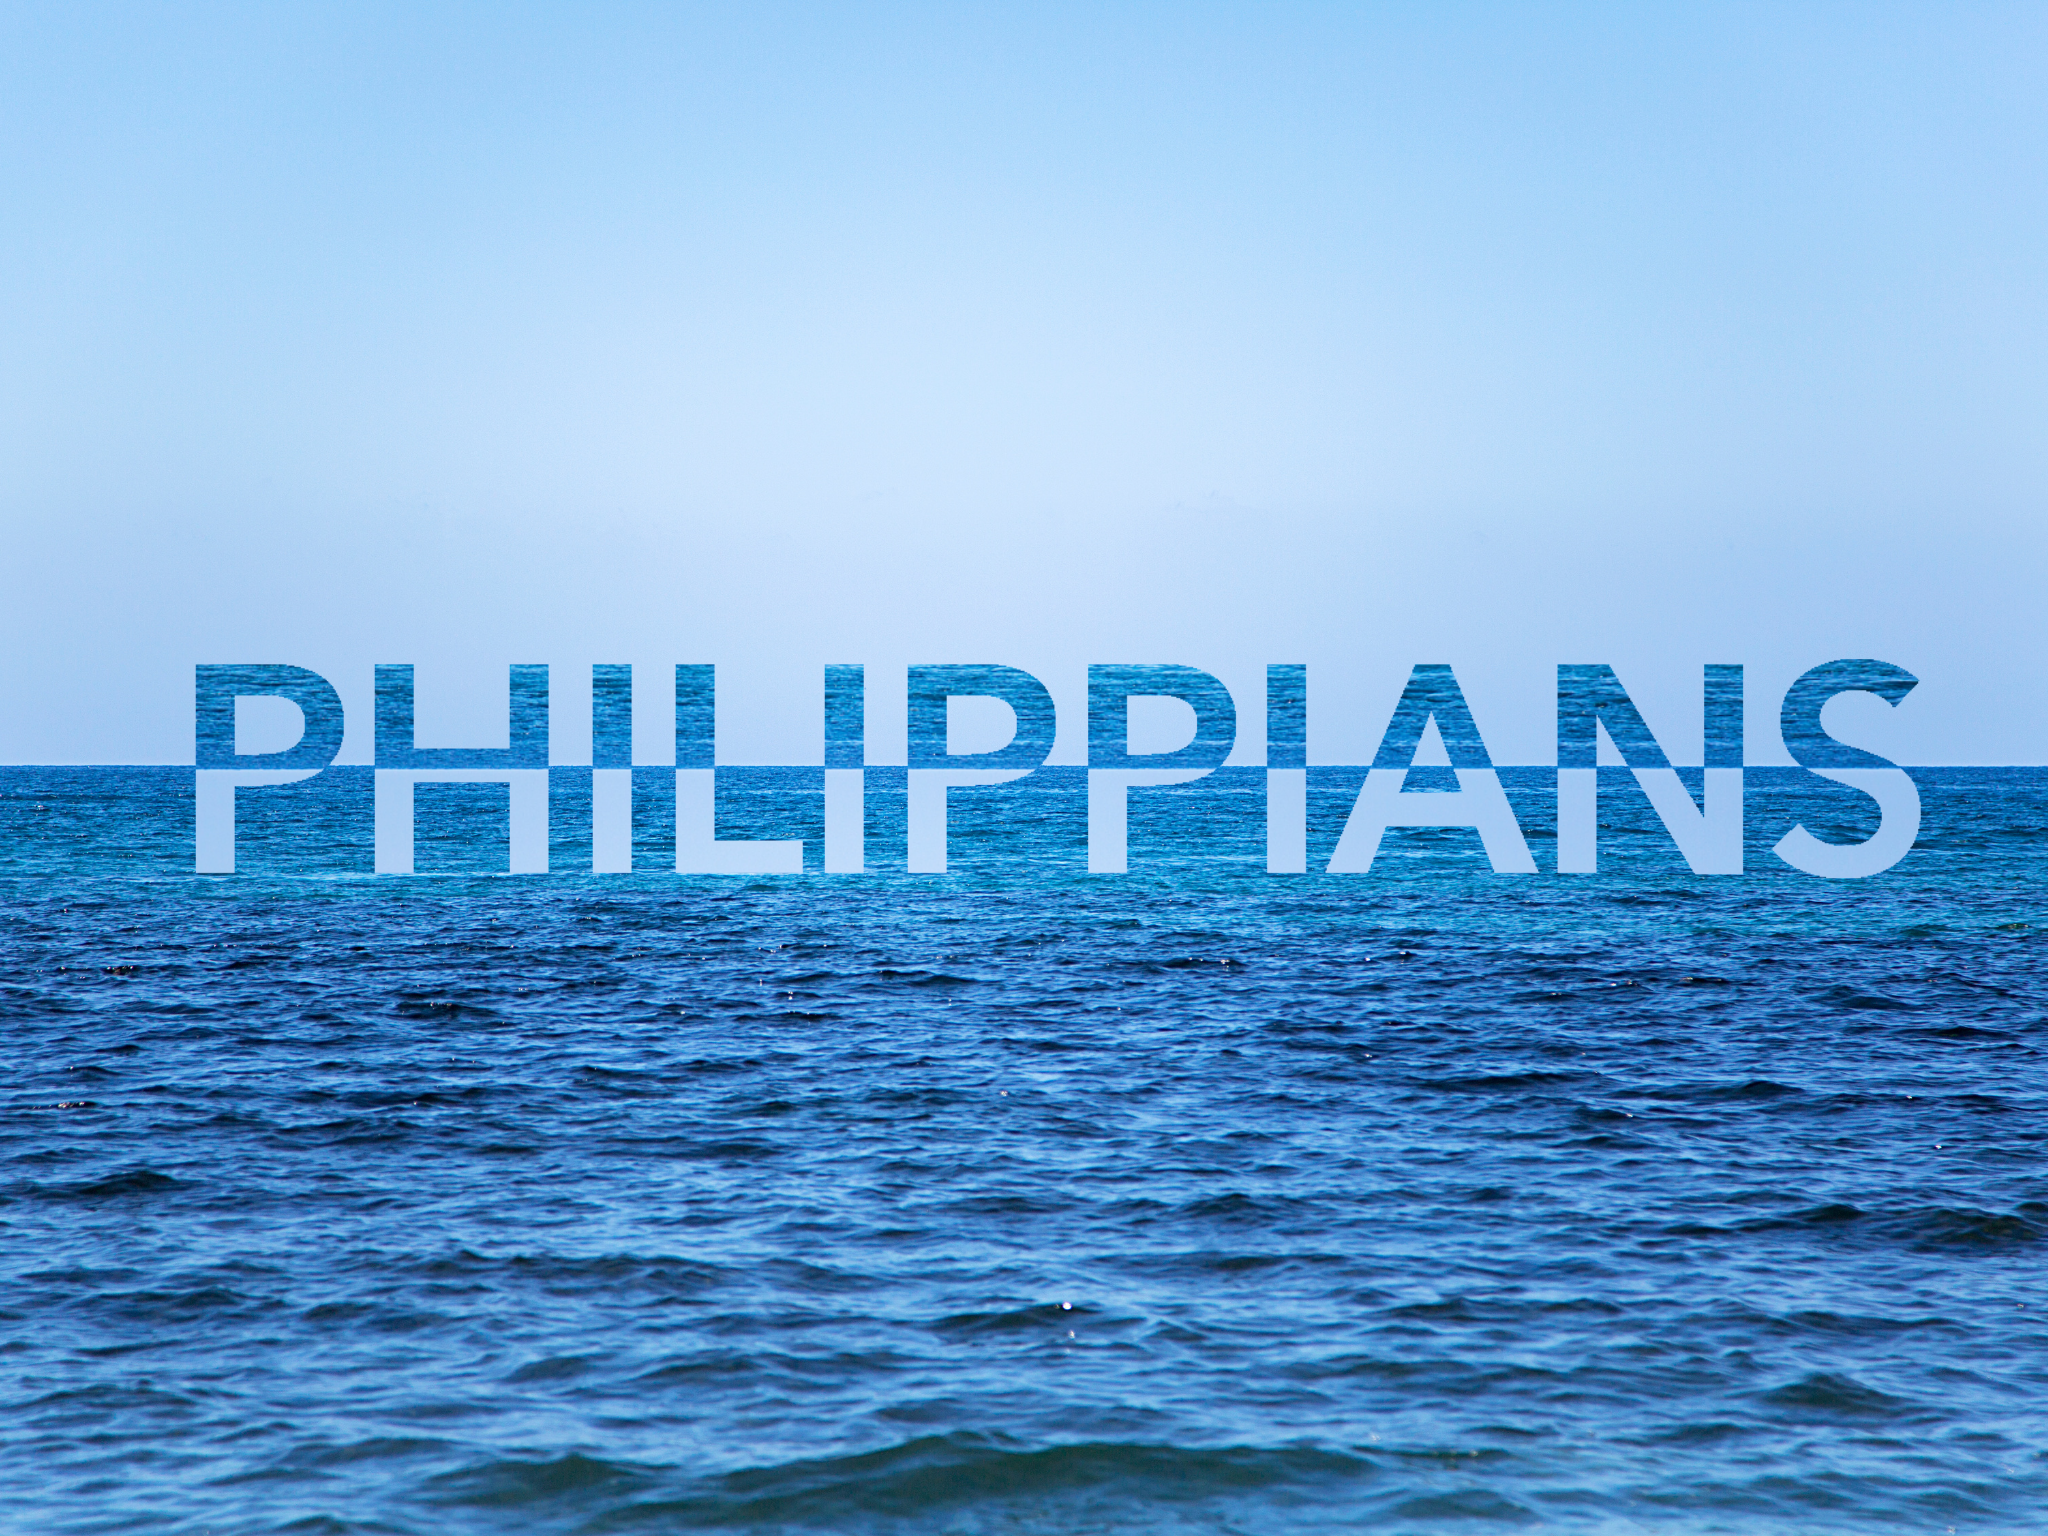 Philippians